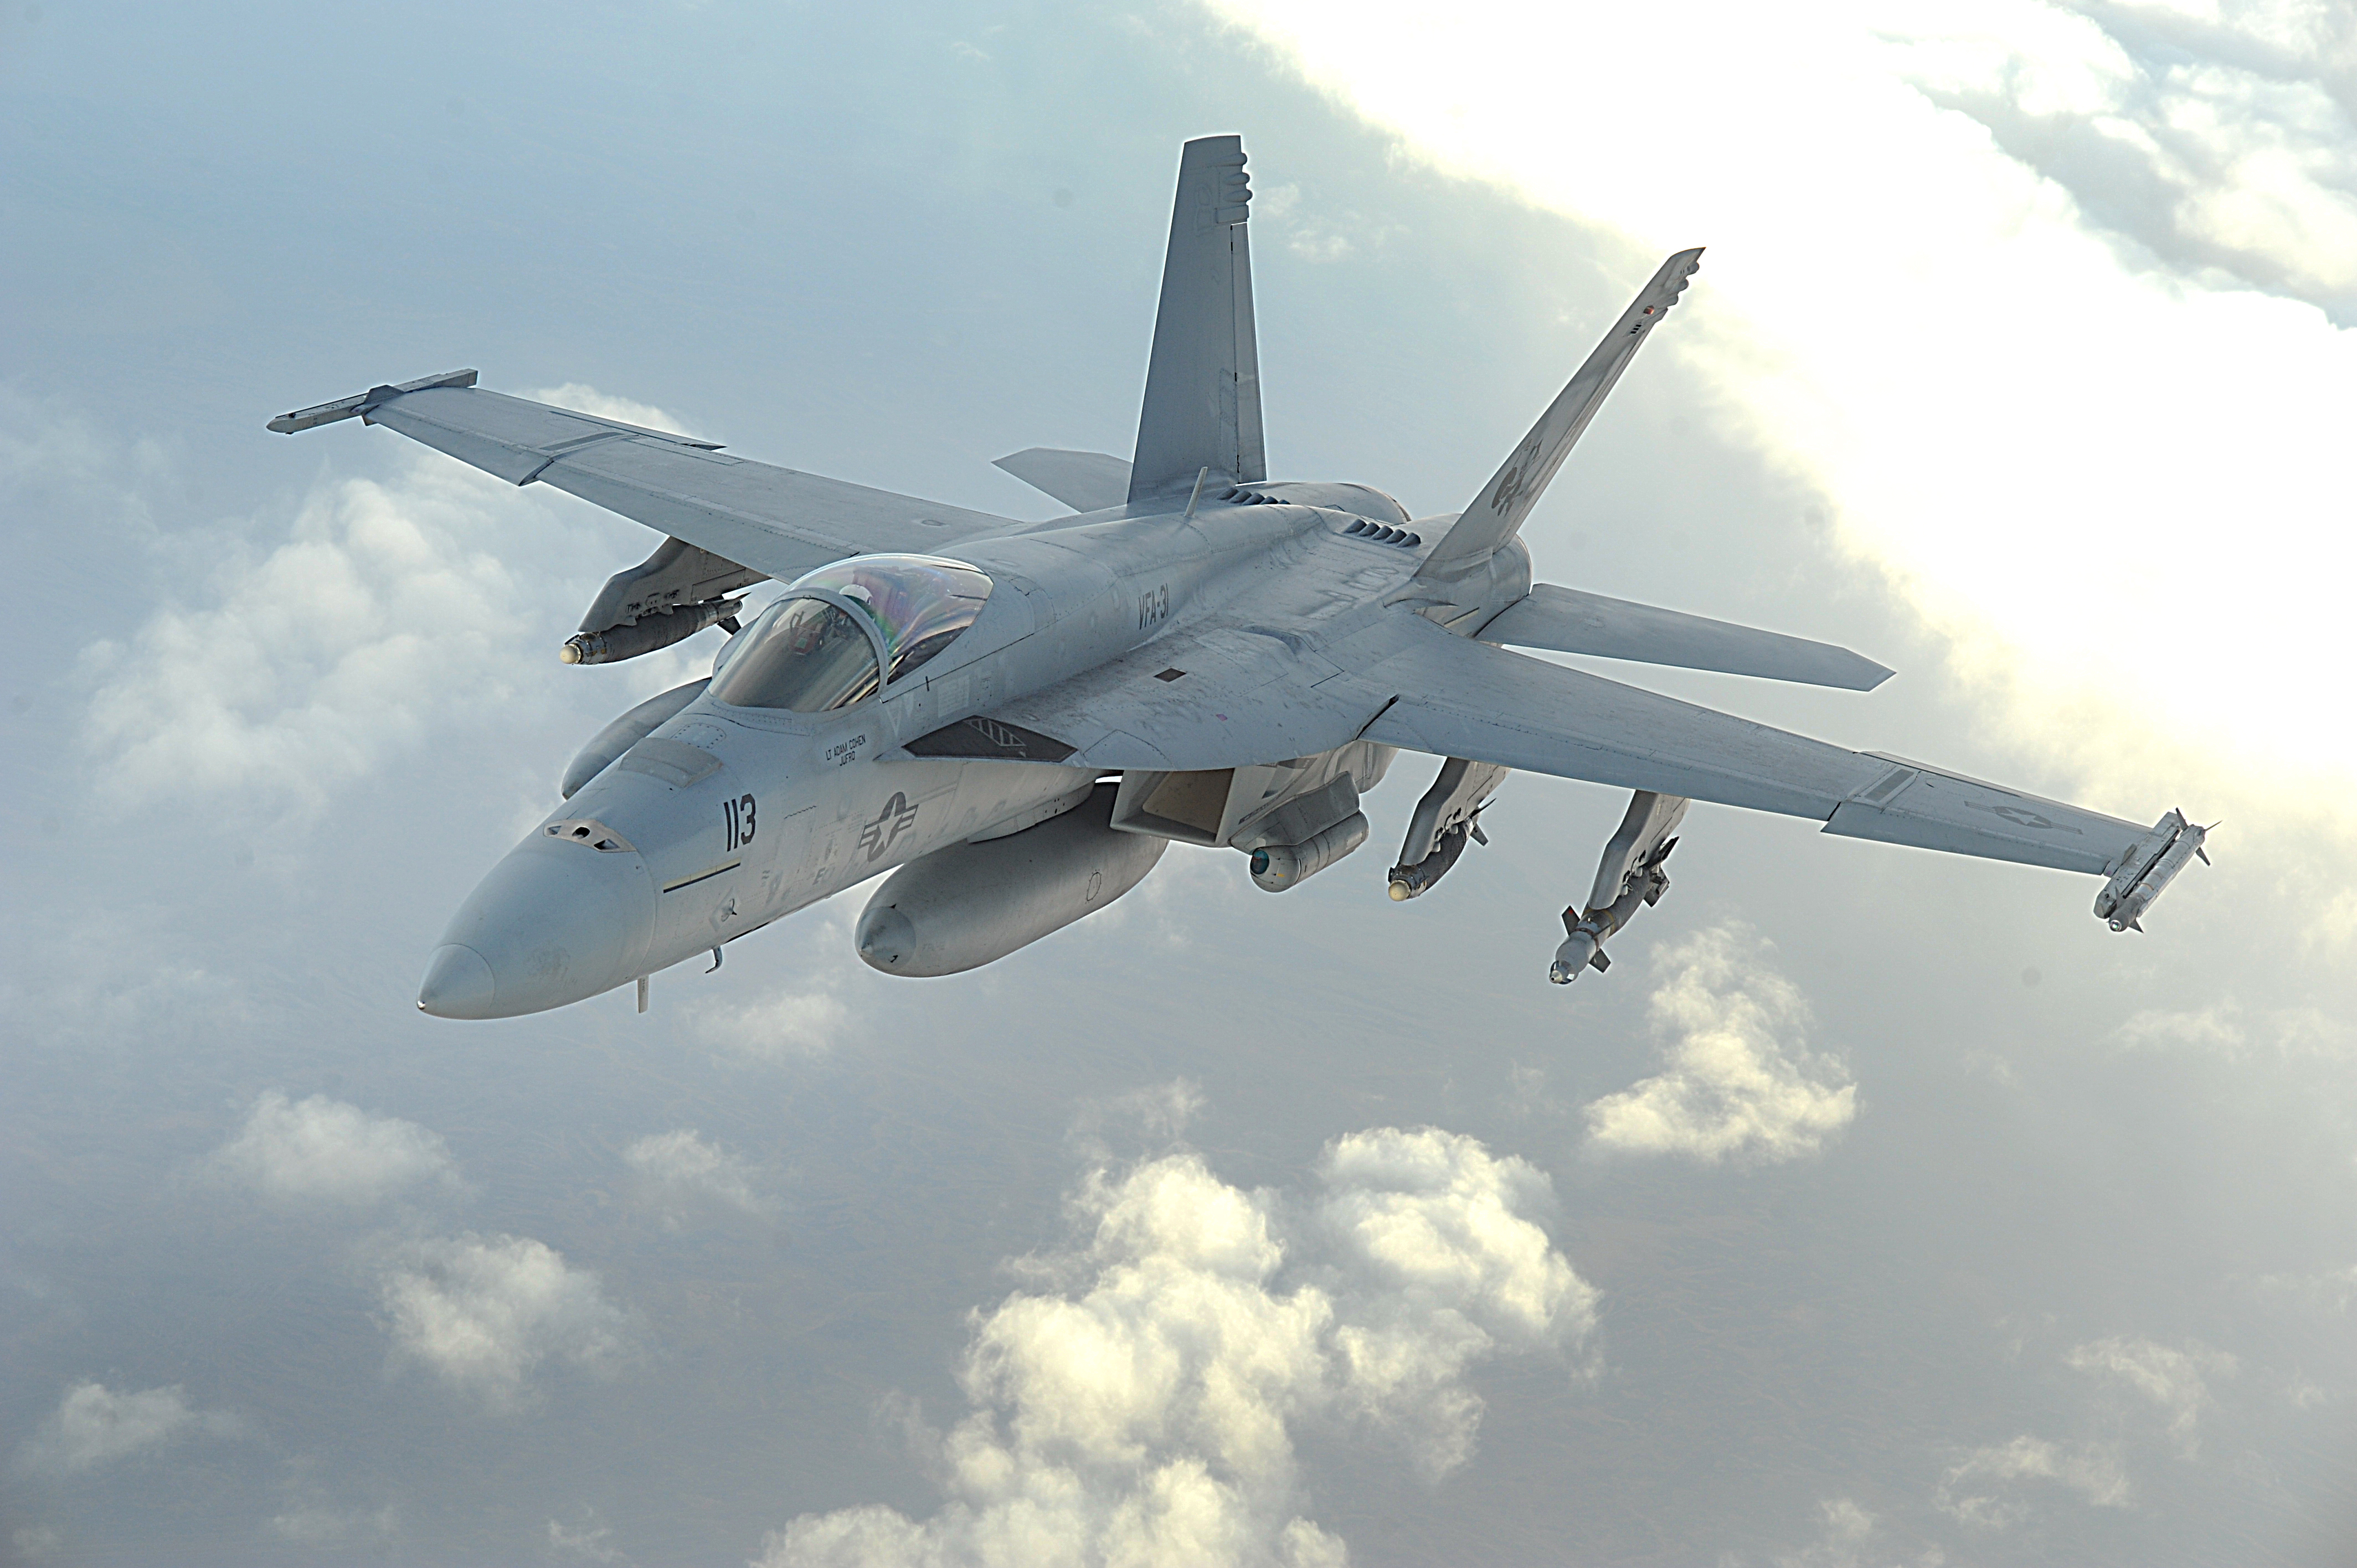 Hornet aircraft, F-18 Hornet, jet aircraft, F/A-18 Hornet, fighters - desktop wallpaper